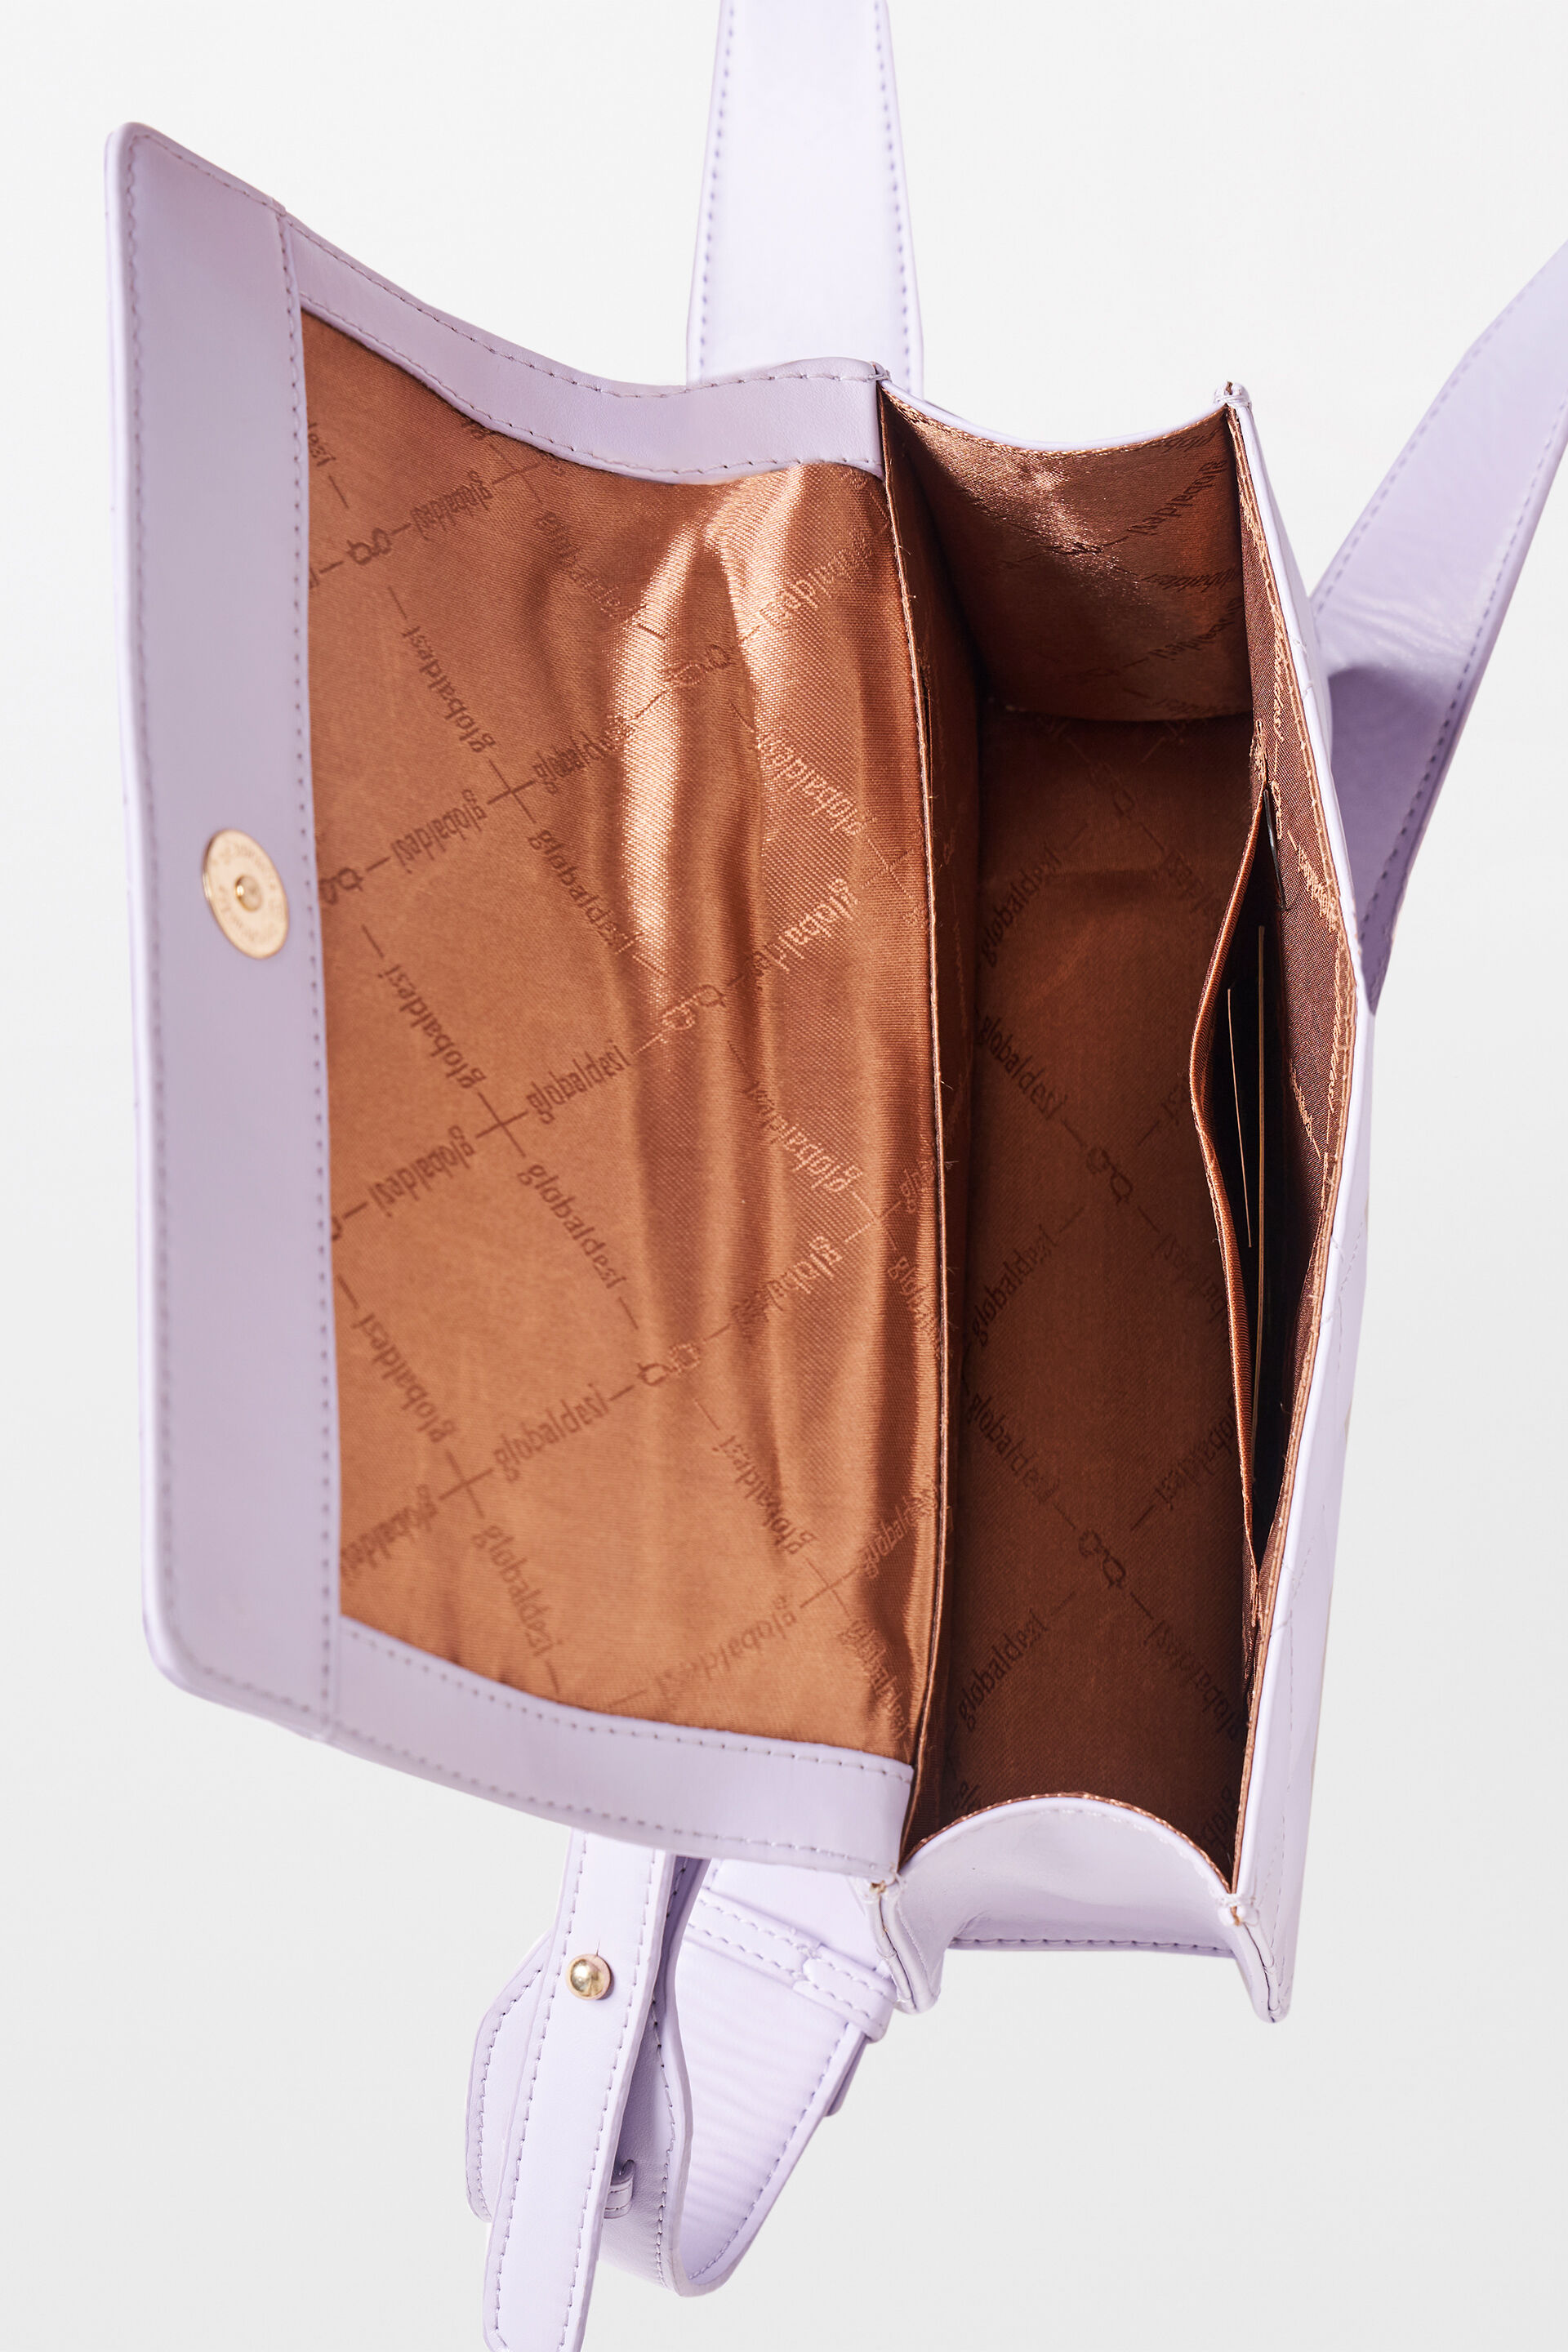 Buy ZAALIQA Women's Satchel Handbag |Ladies Purse Handbag |Top Handle  Shoulder Bag at Amazon.in